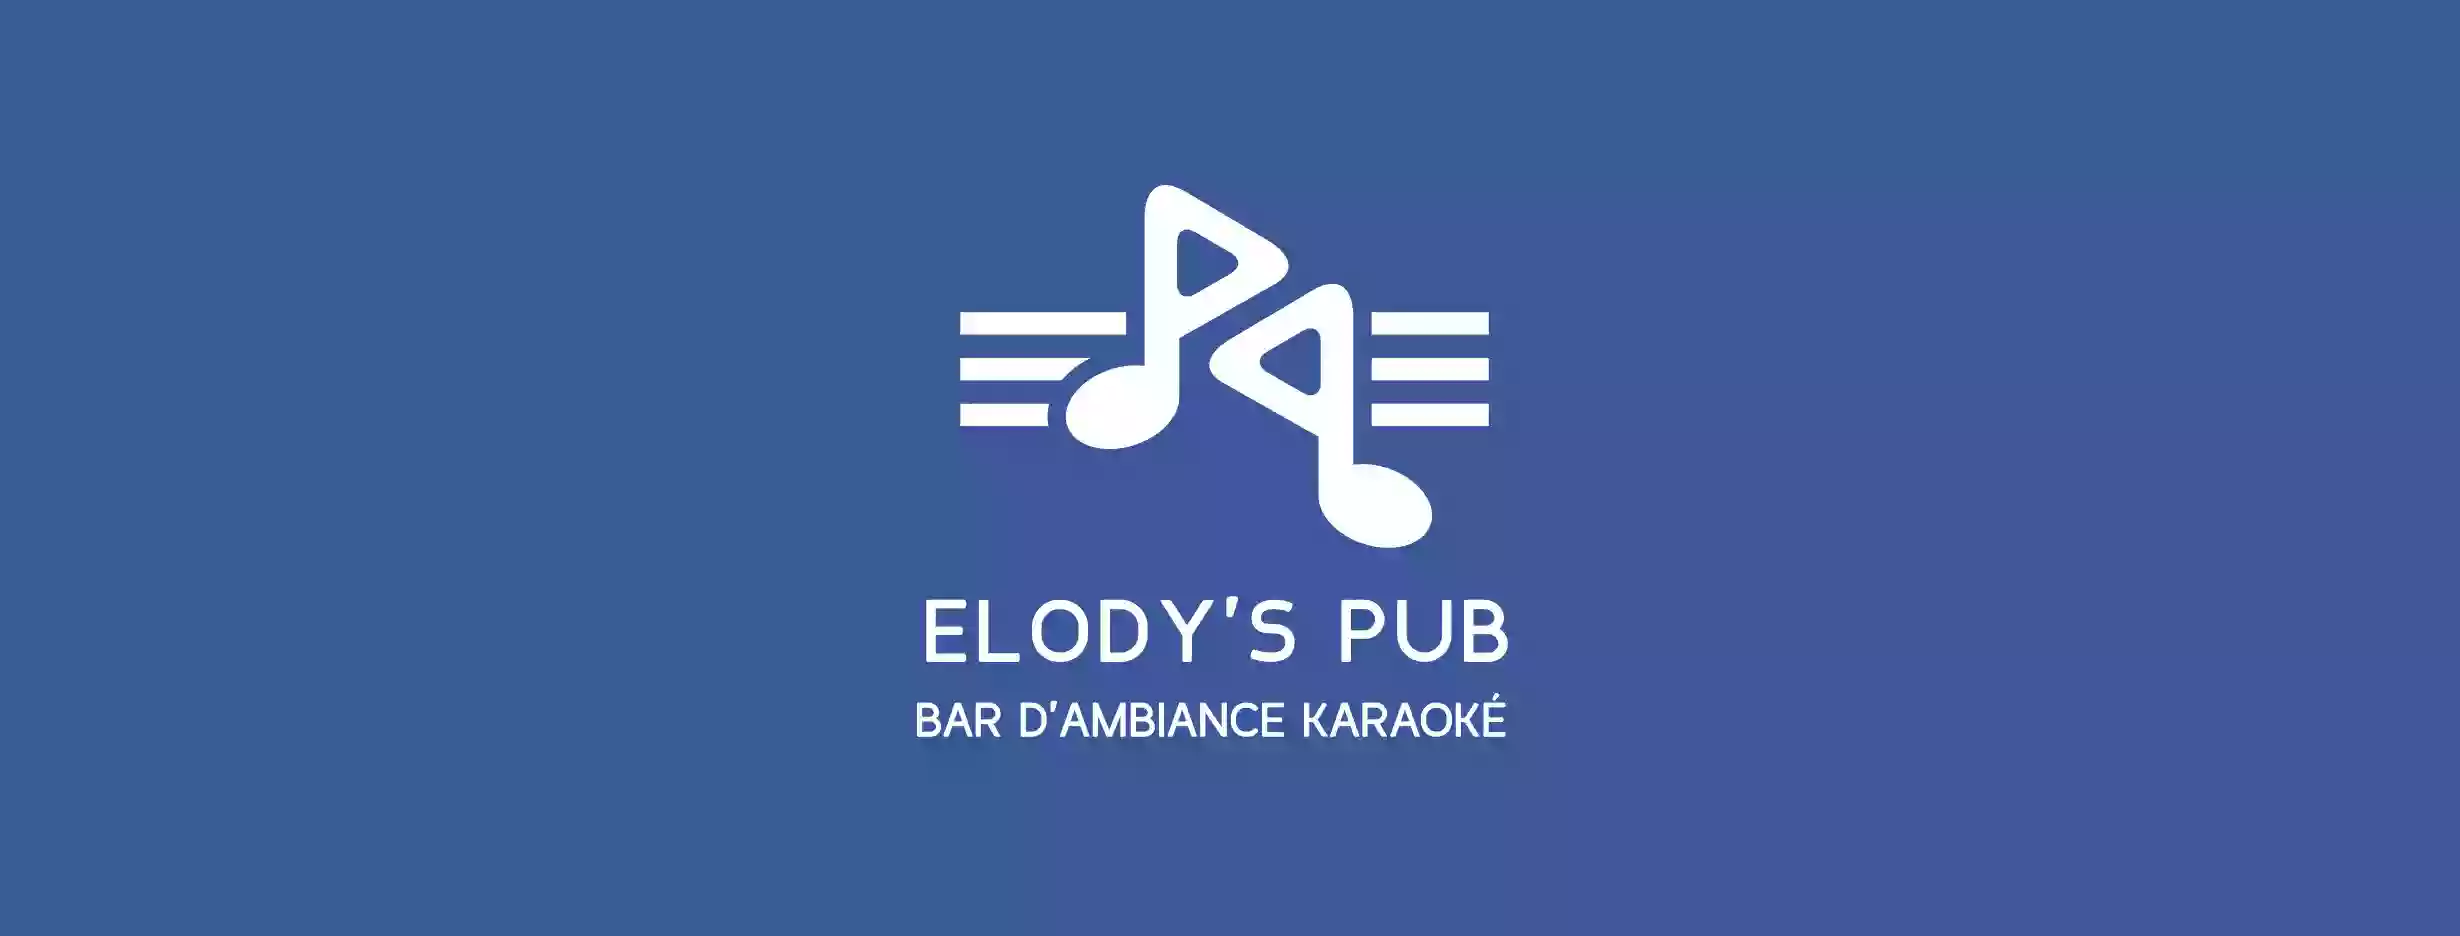 Elody's Pub Bar d'Ambiance Musicale et Karaoké